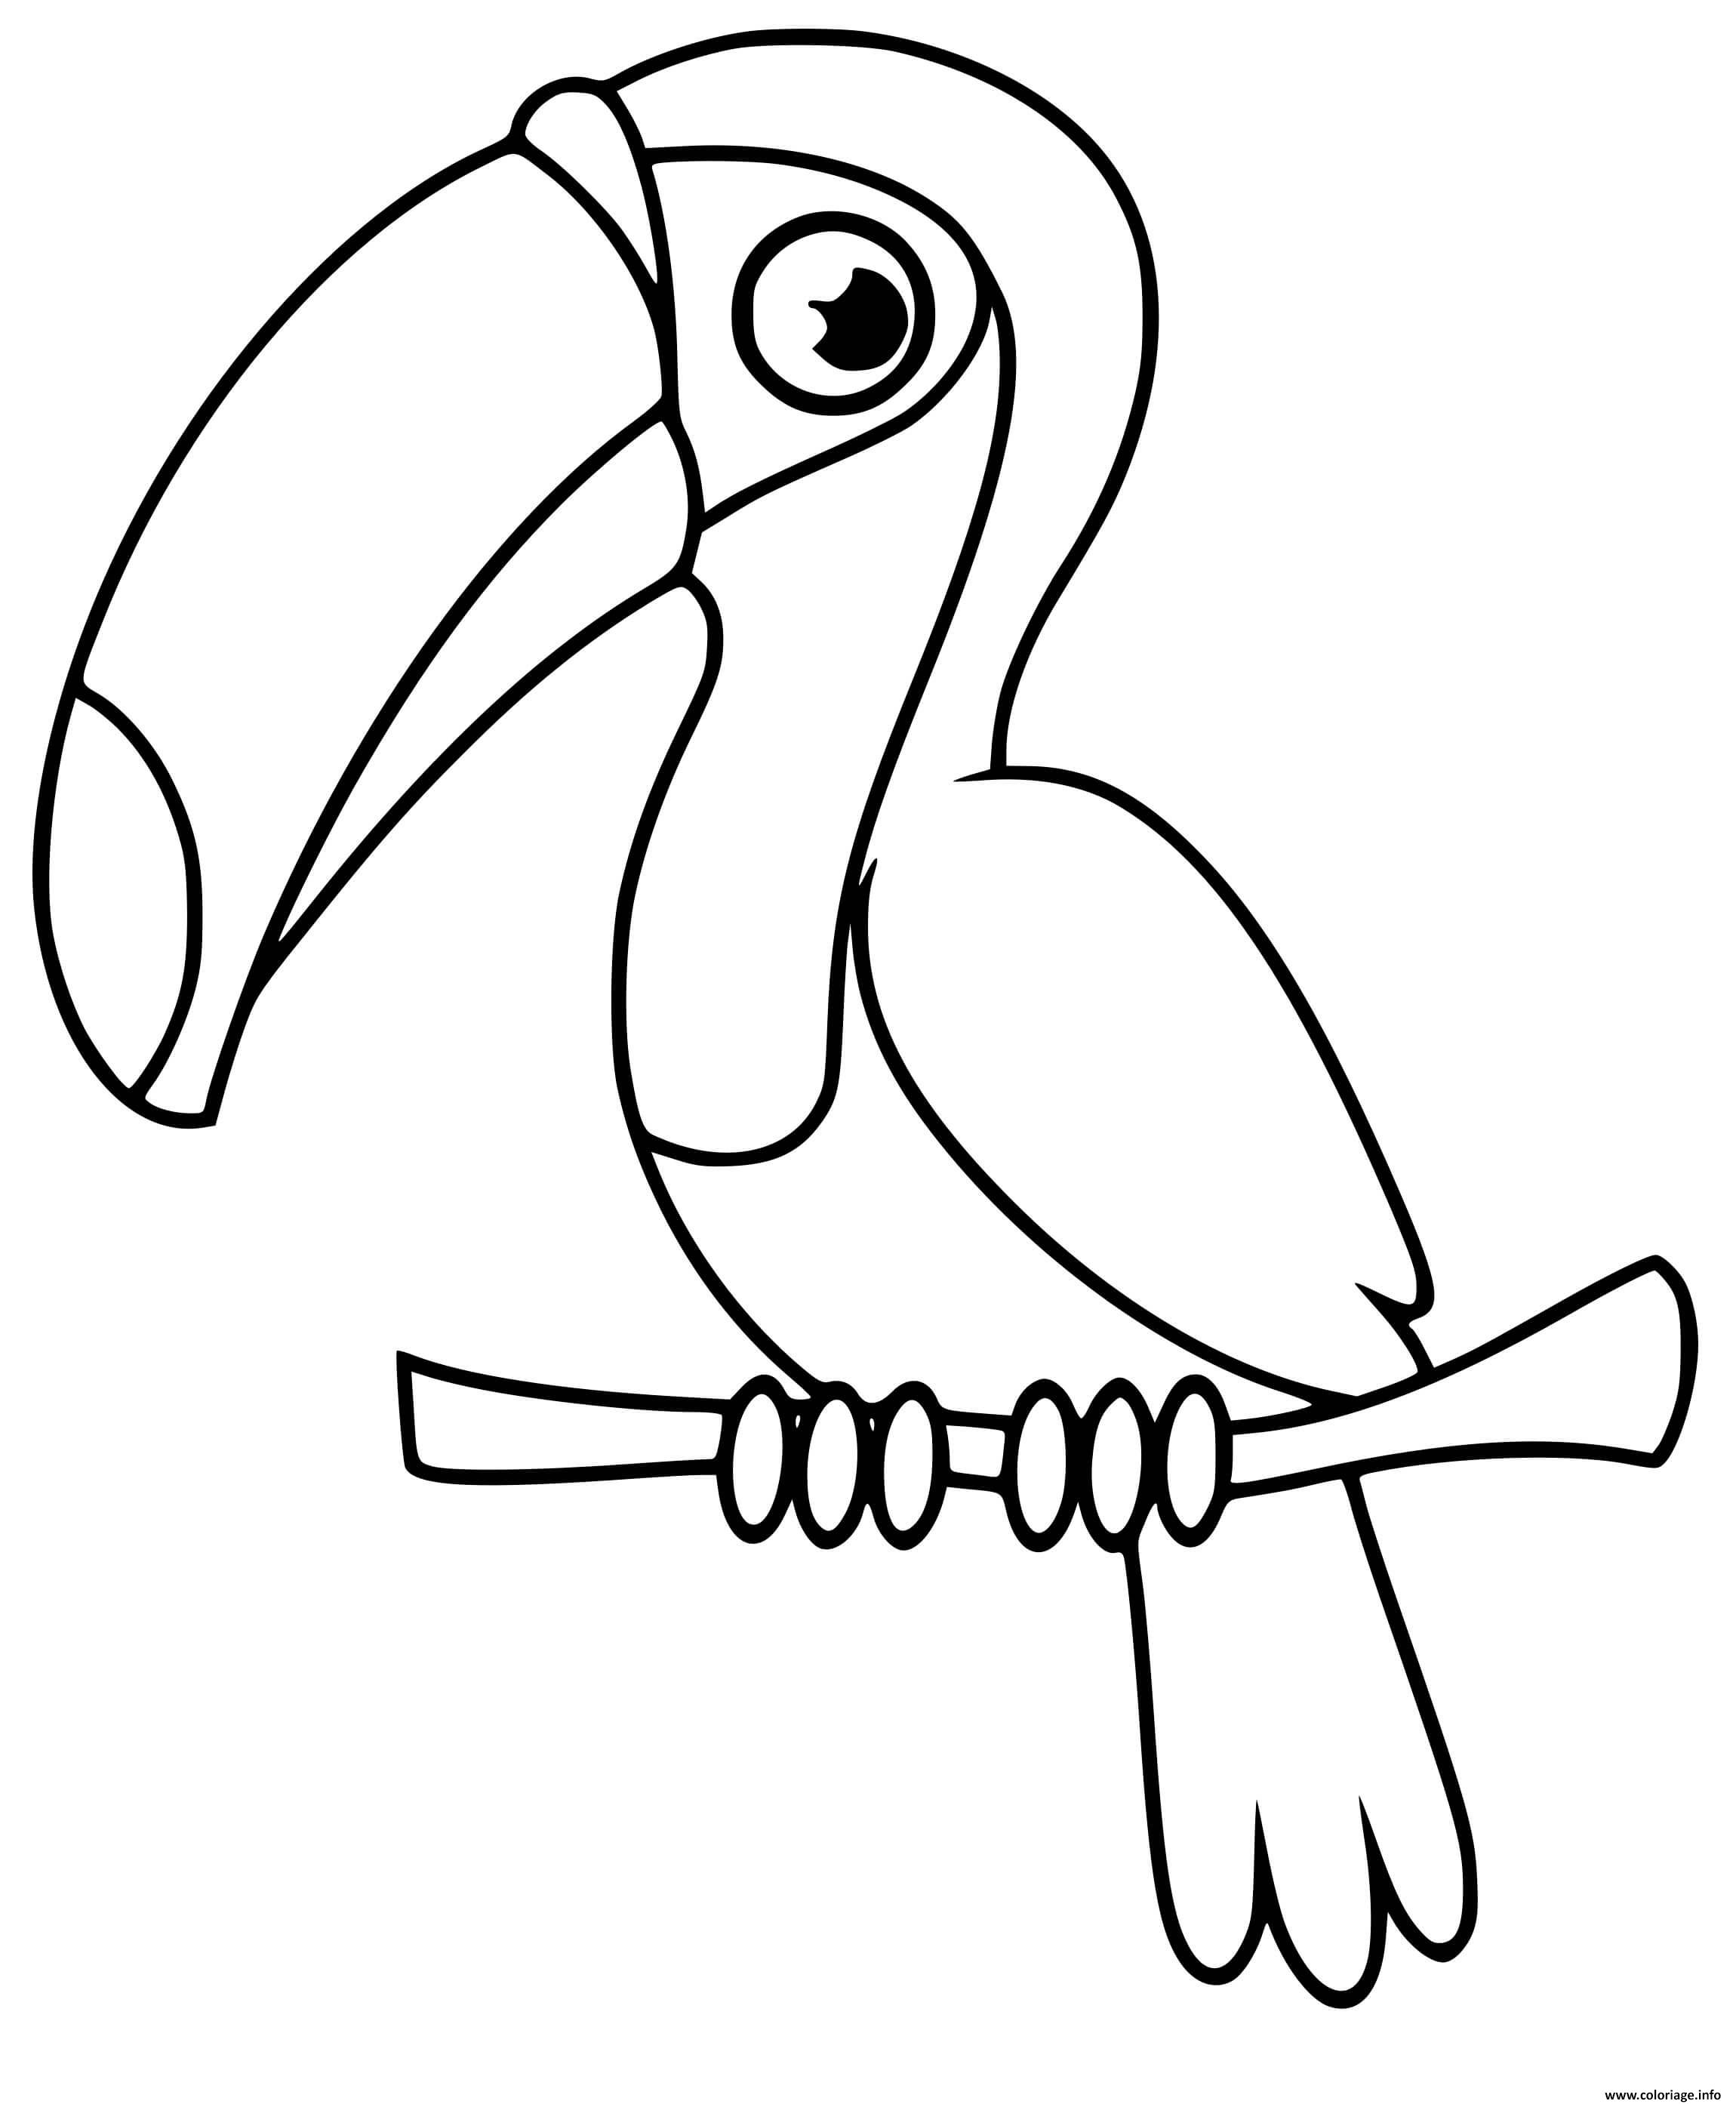 Dessin oiseau toucan toco maternelle Coloriage Gratuit à Imprimer